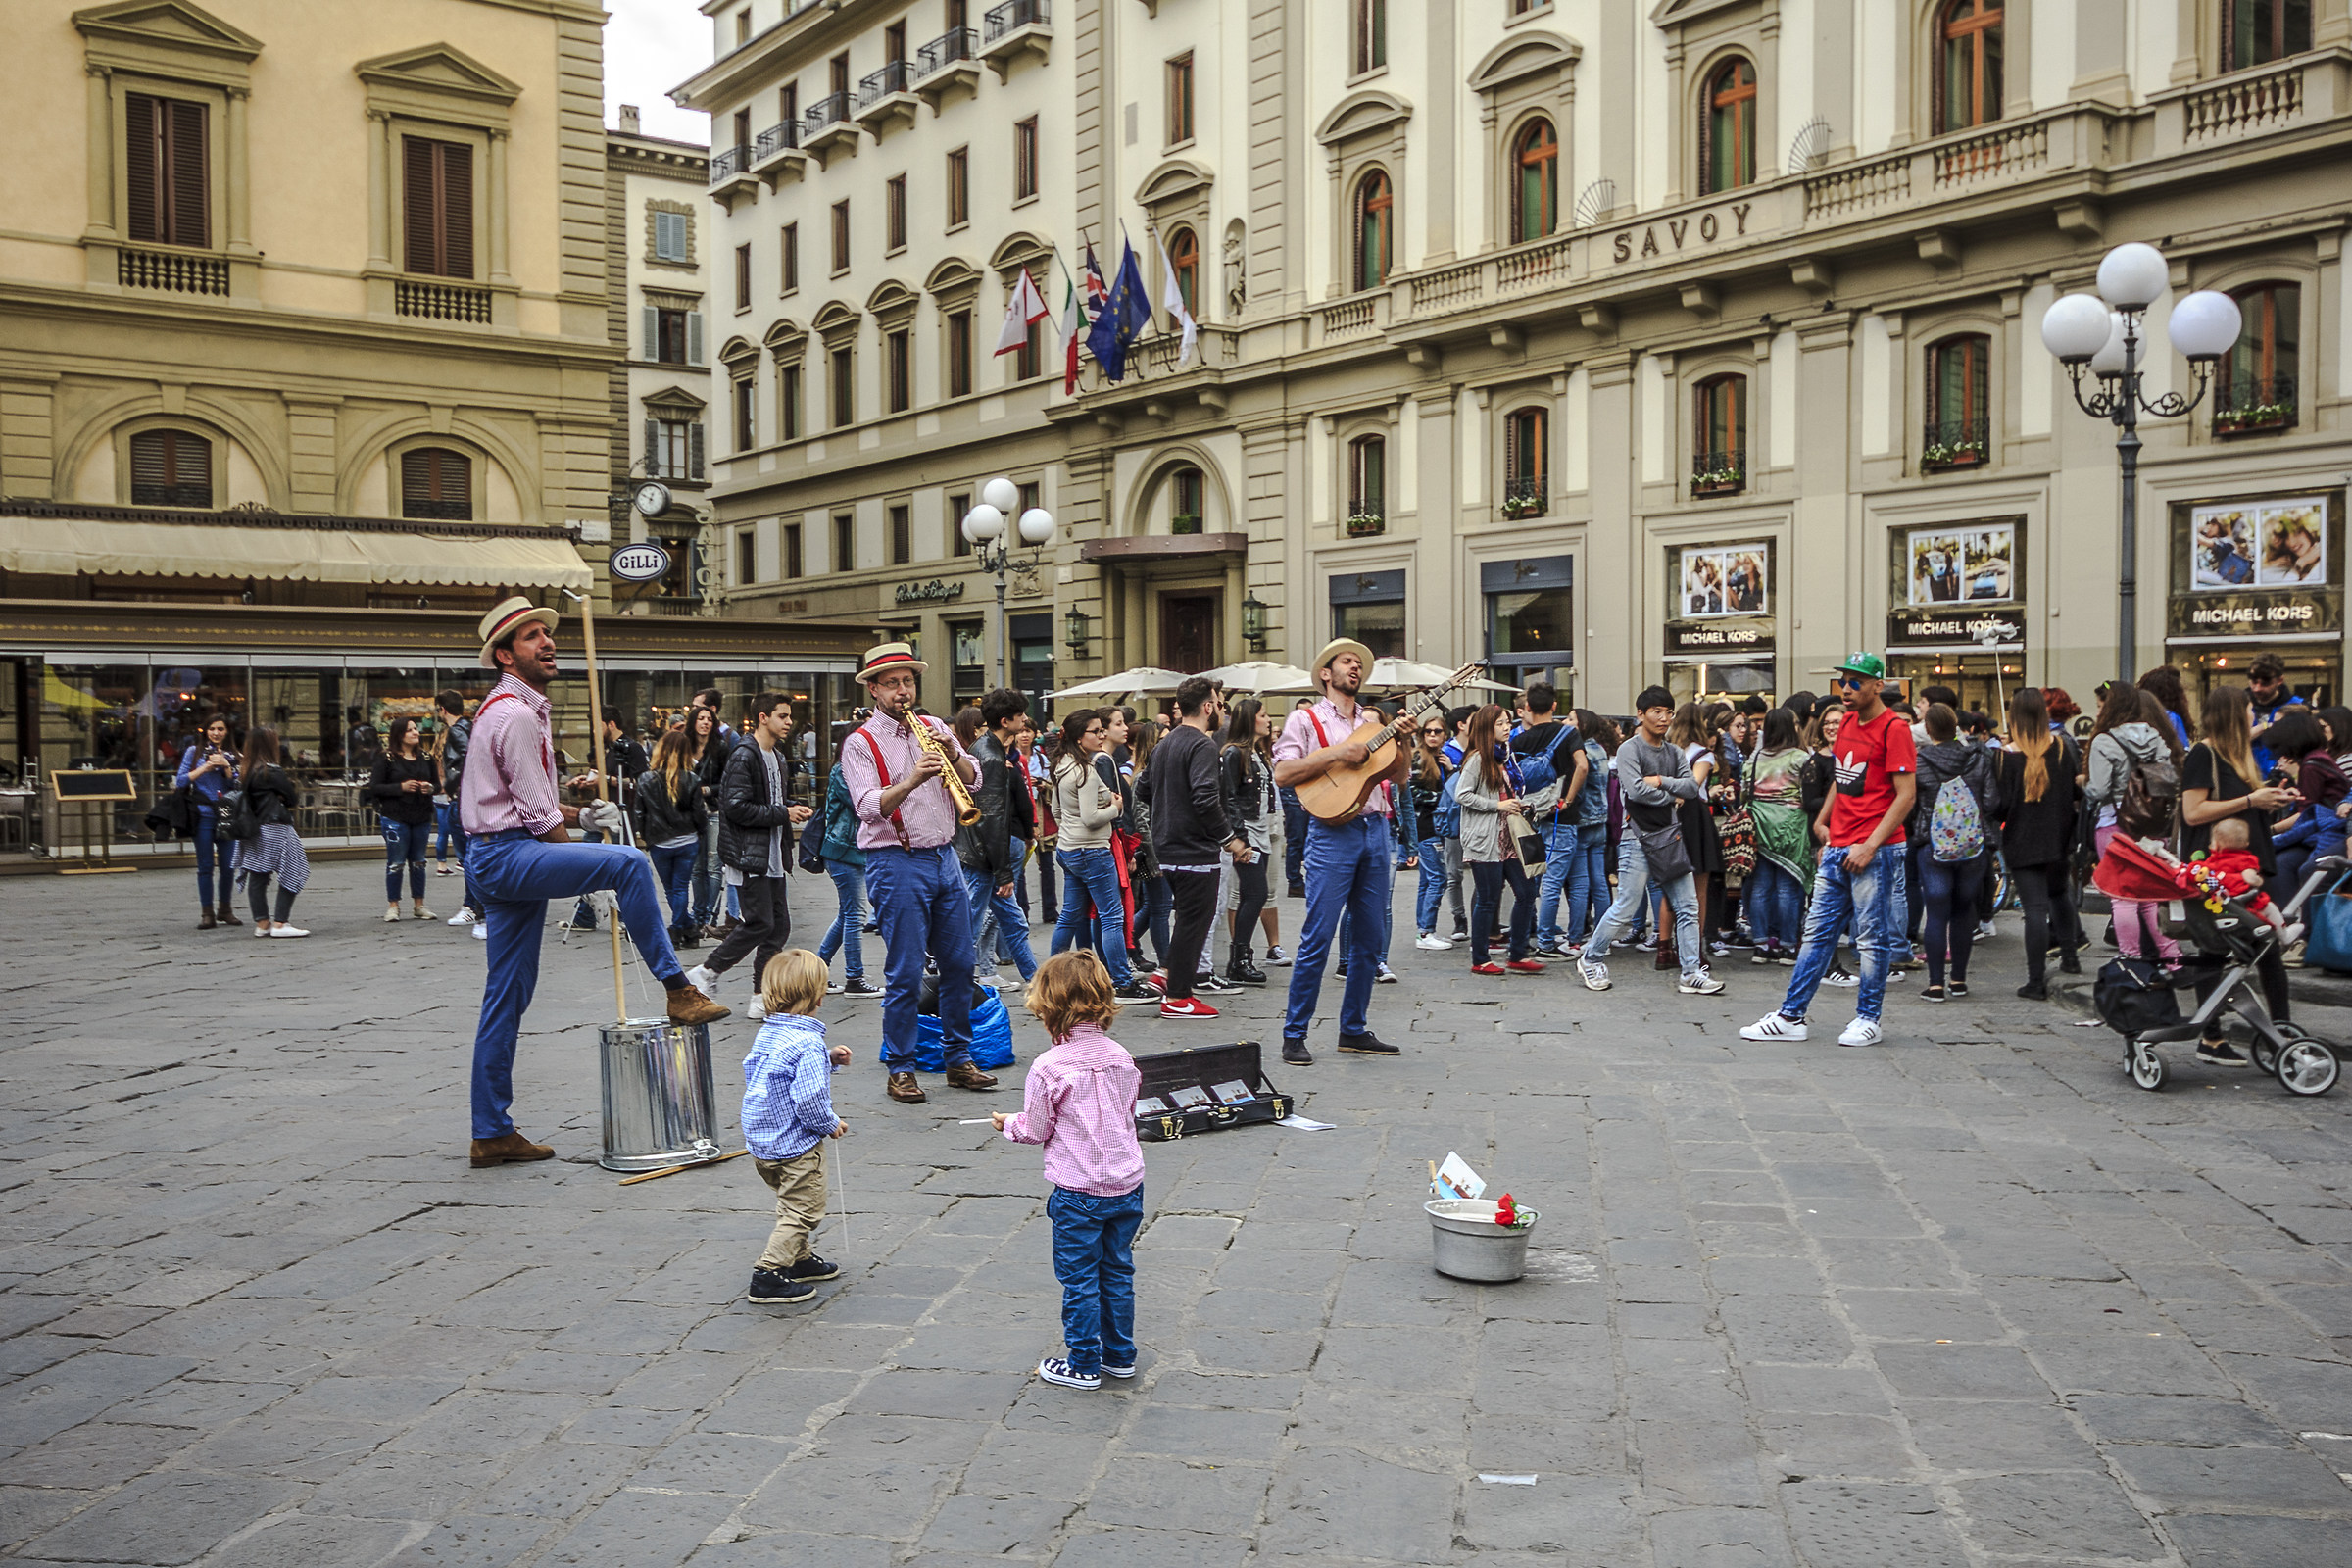 Entertainment in the Piazza della Repubblica...